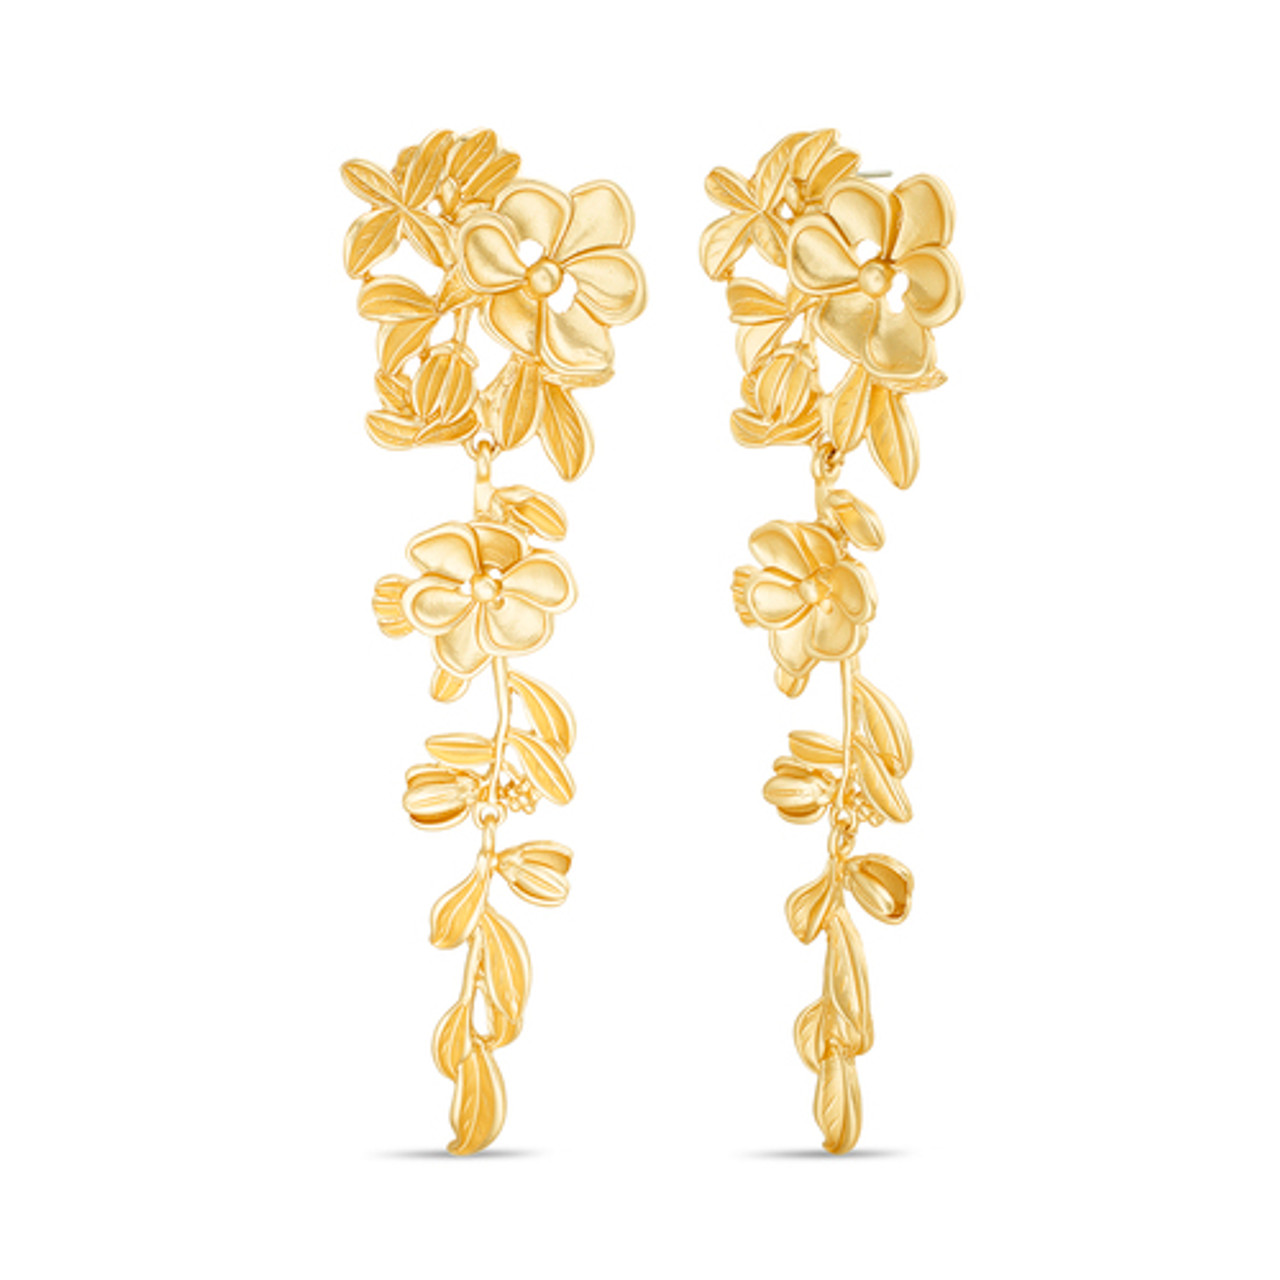 Buy ZINU Rose Gold Flower Shape Earrings for Women/Girls | Zirconia Stud  Ear Earrings | Beautiful Fancy Tiny Ear tops| Best Gift for Women|Women  Earrings |Dangle Earings (030JEK) at Amazon.in